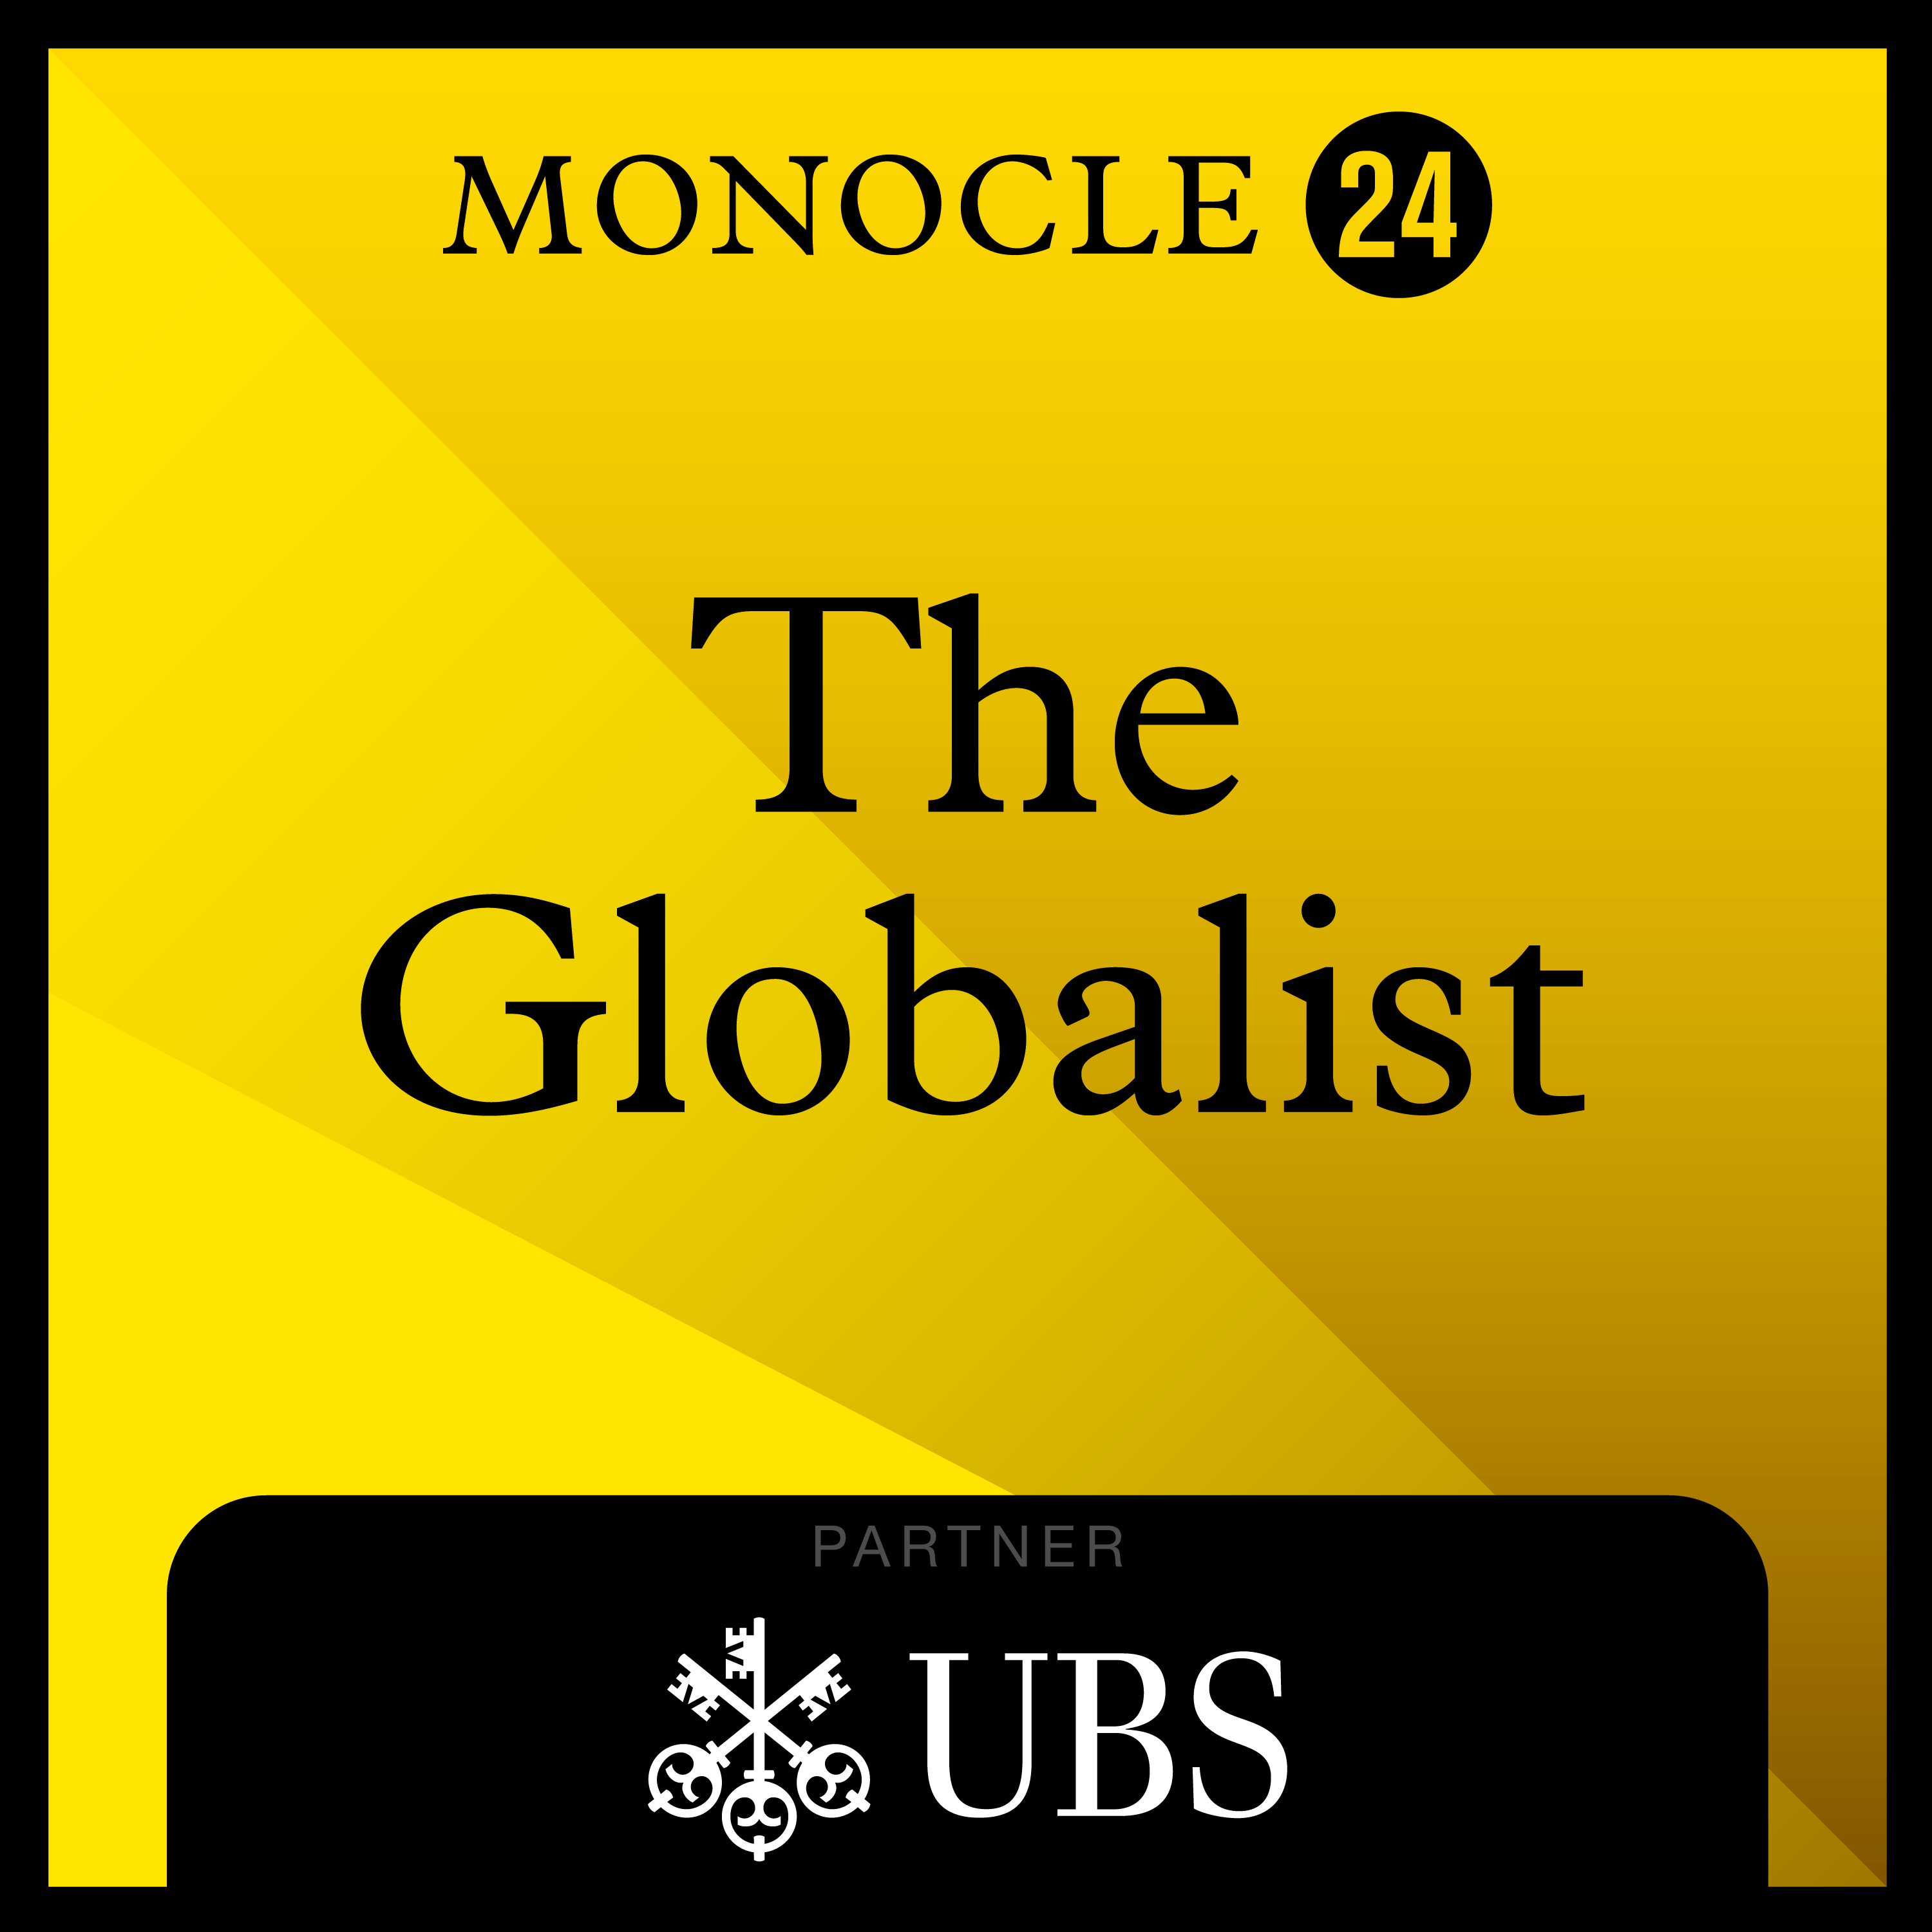 Wednesday 1 February, The Globalist 2983 - Radio